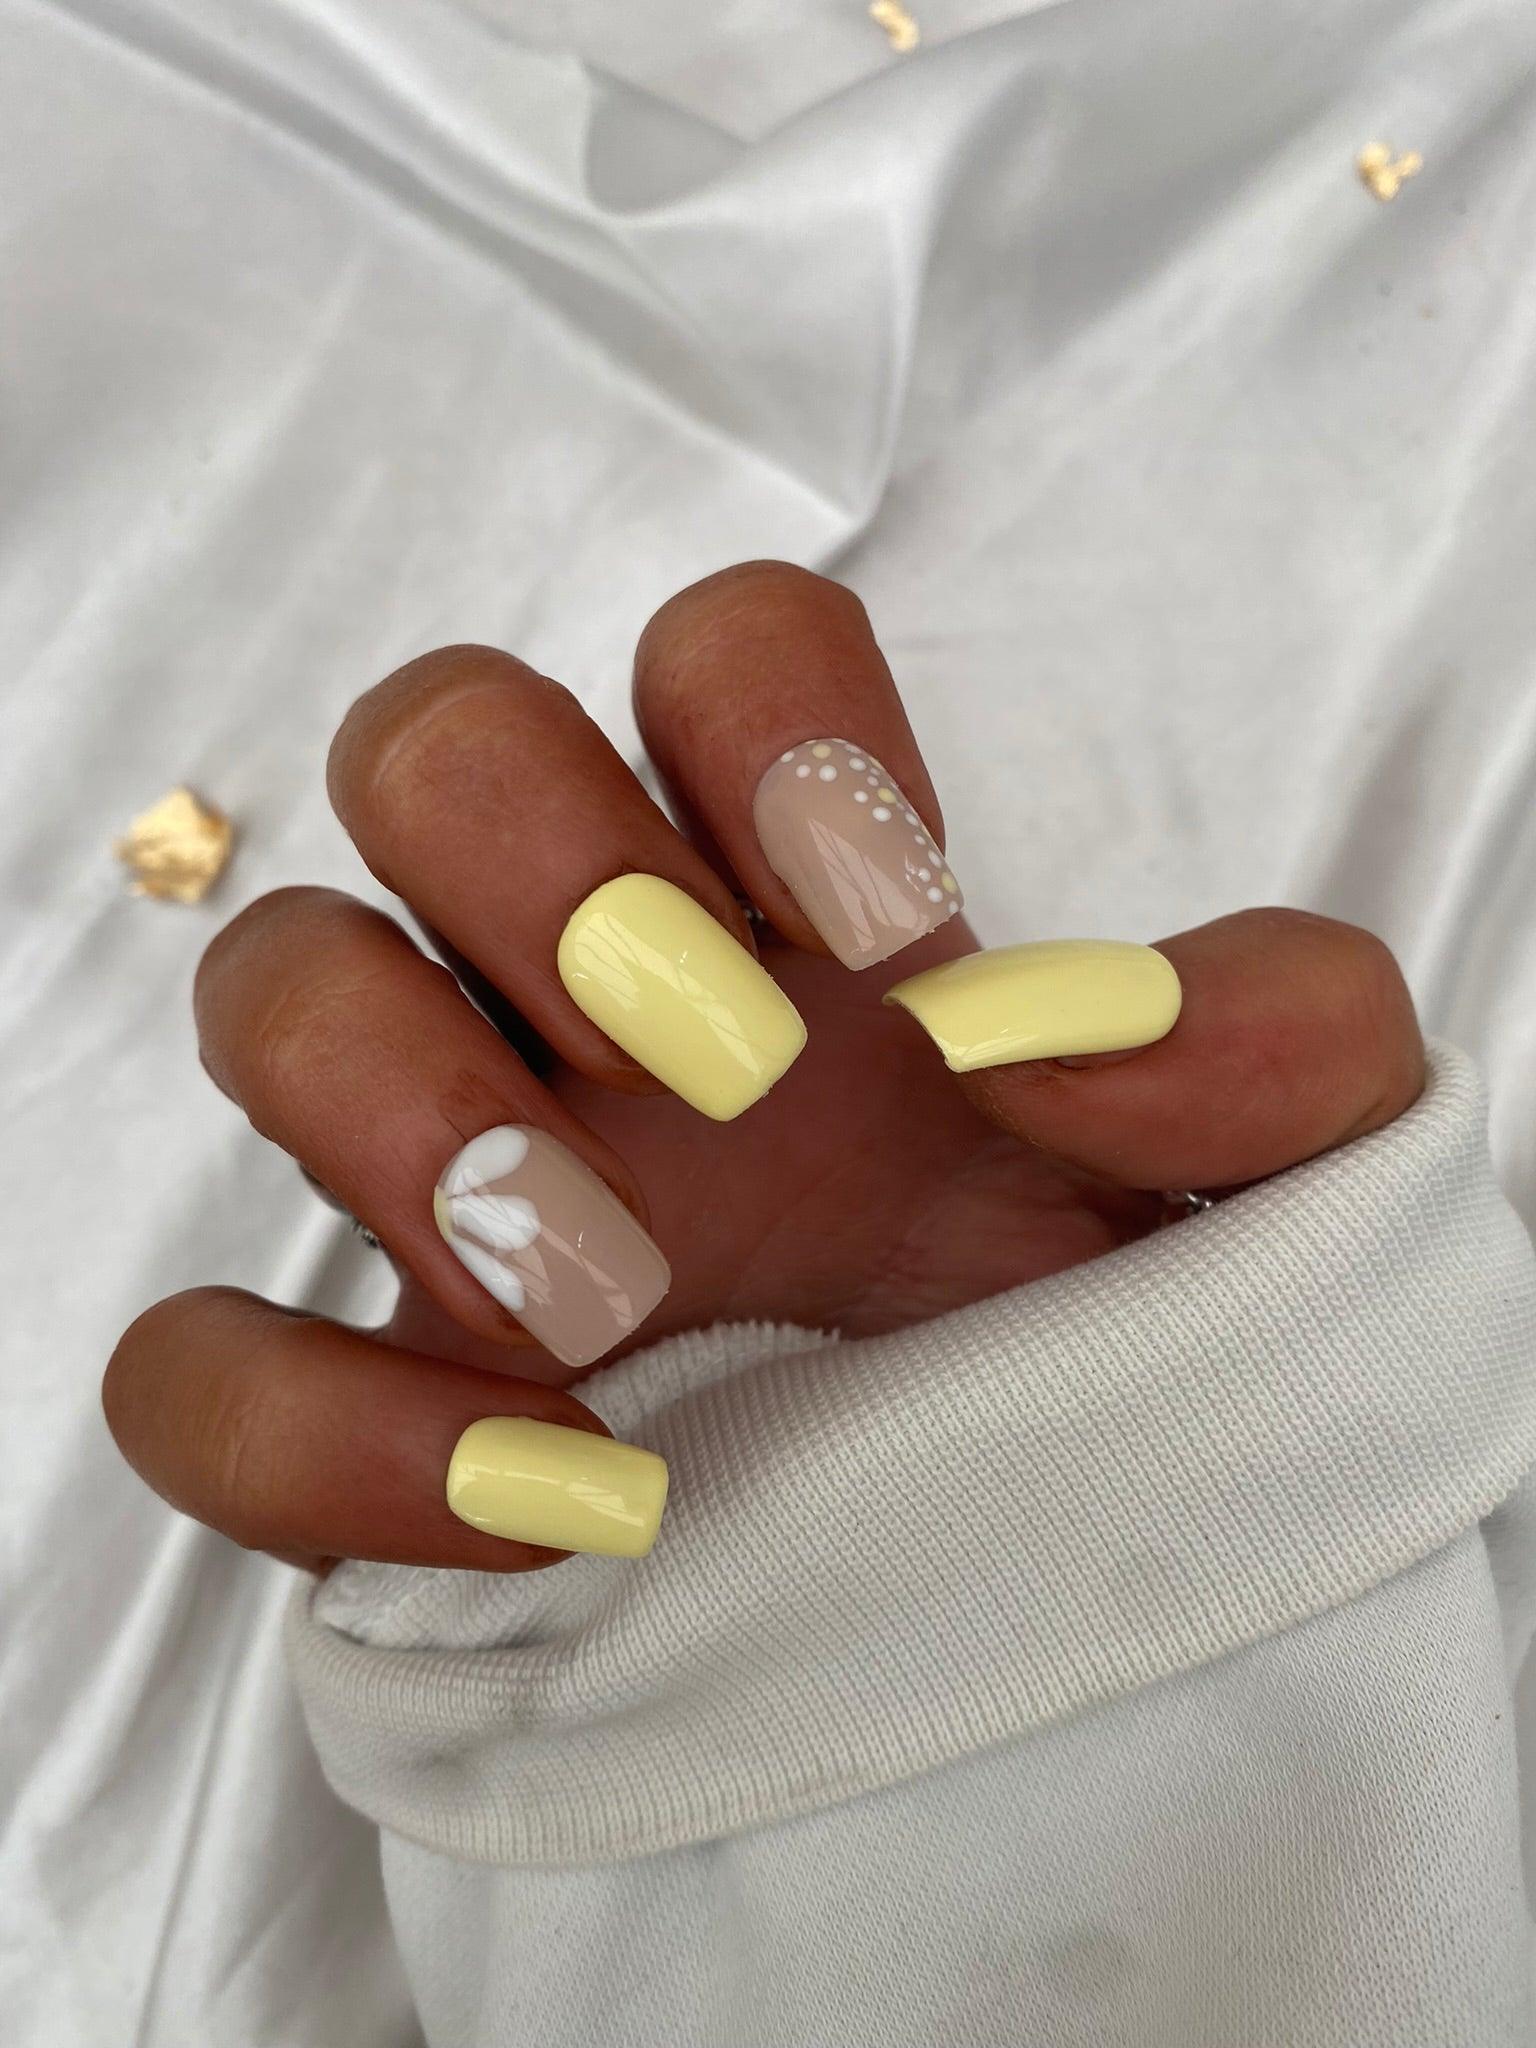 Yellow nails | Yellow nail art, Fall nail art, Yellow nails design